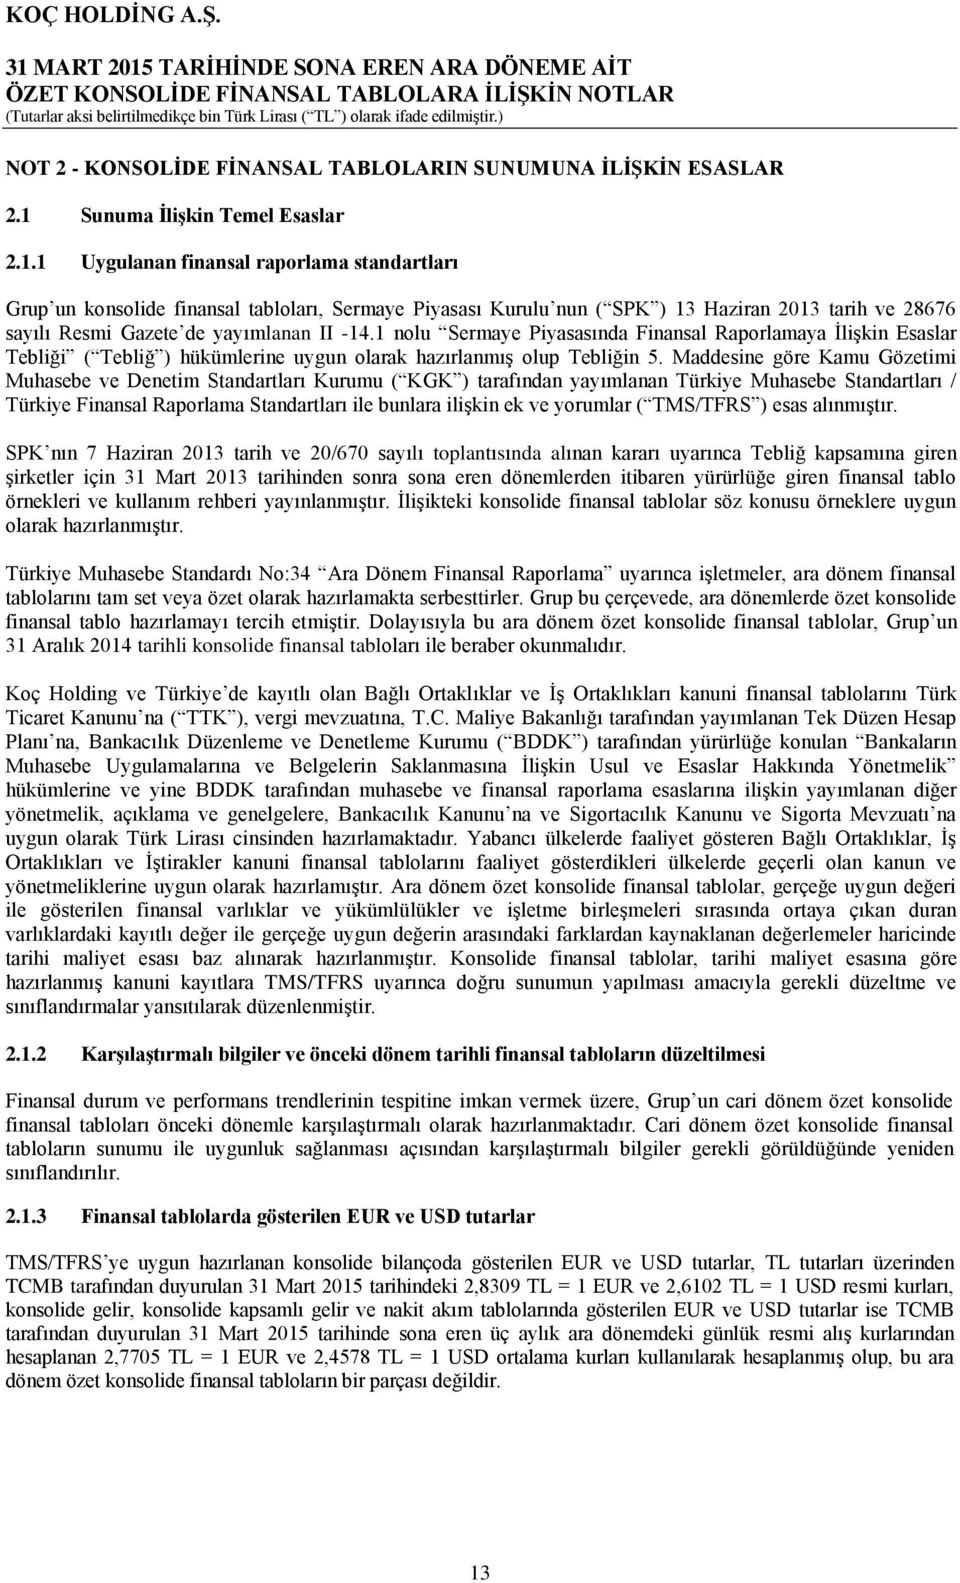 1 Uygulanan finansal raporlama standartları Grup un konsolide finansal tabloları, Sermaye Piyasası Kurulu nun ( SPK ) 13 Haziran 2013 tarih ve 28676 sayılı Resmi Gazete de yayımlanan II -14.